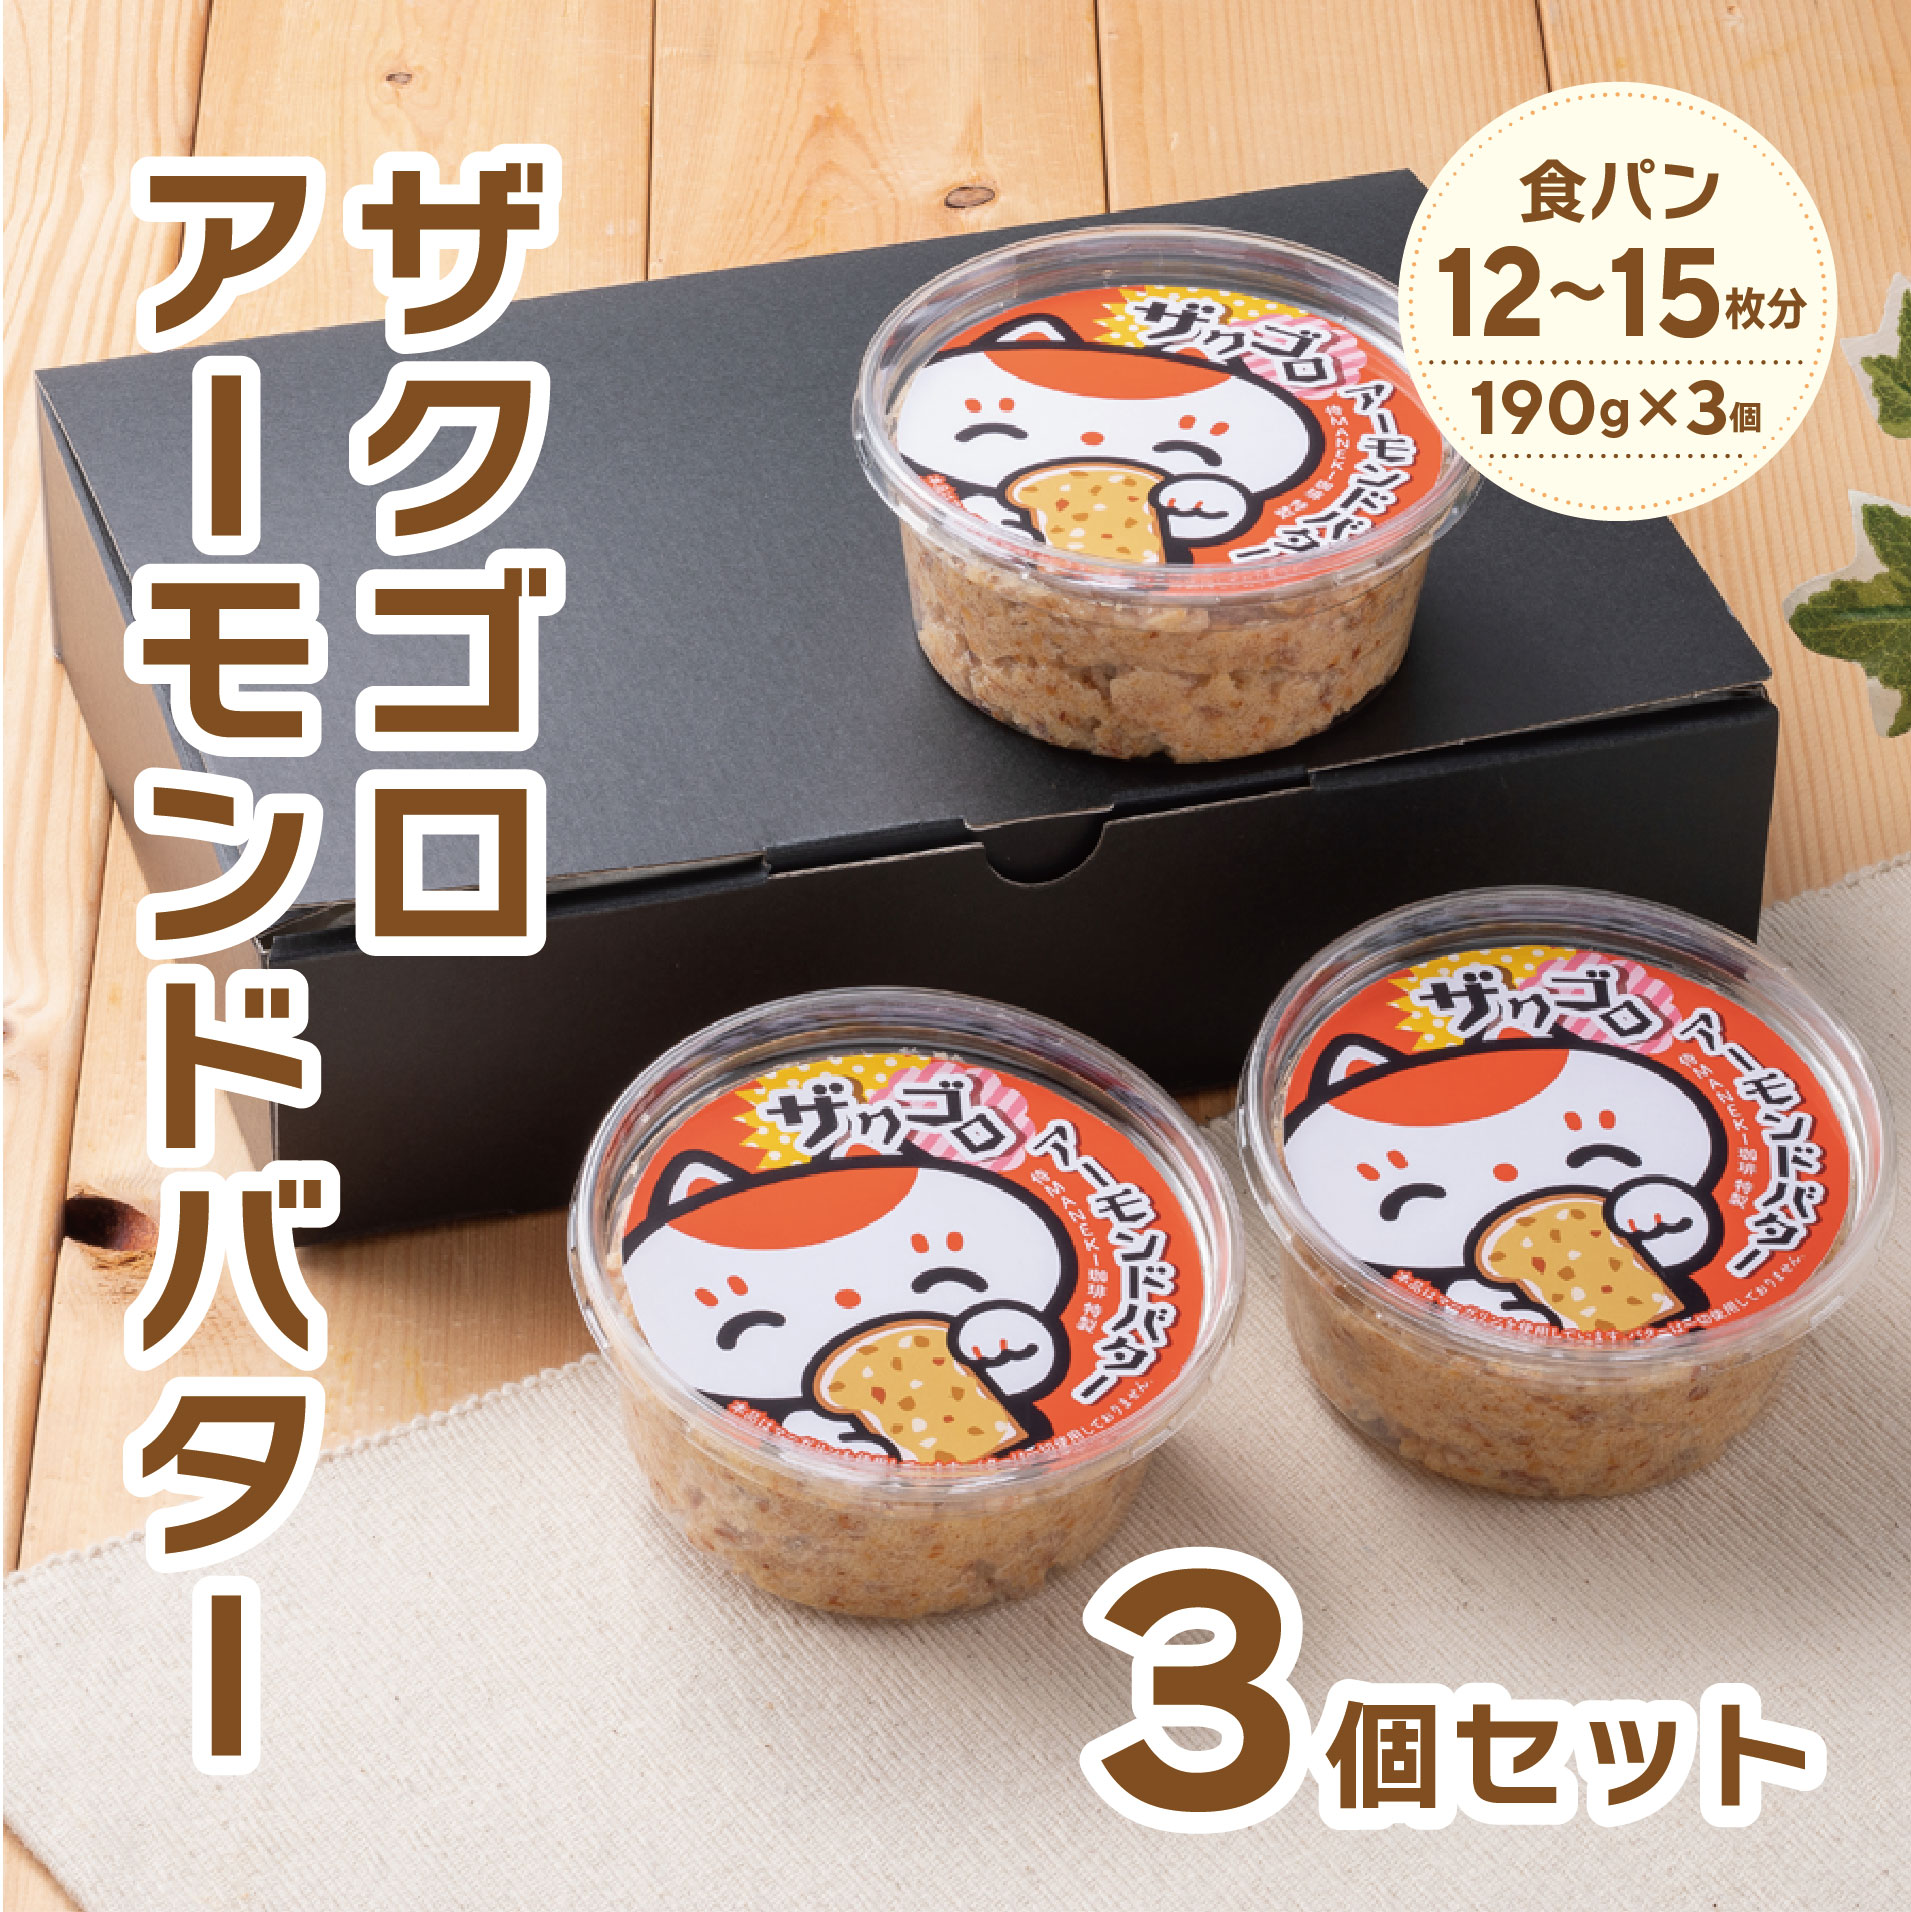 【冷蔵便】ザクゴロアーモンドバター3個セット